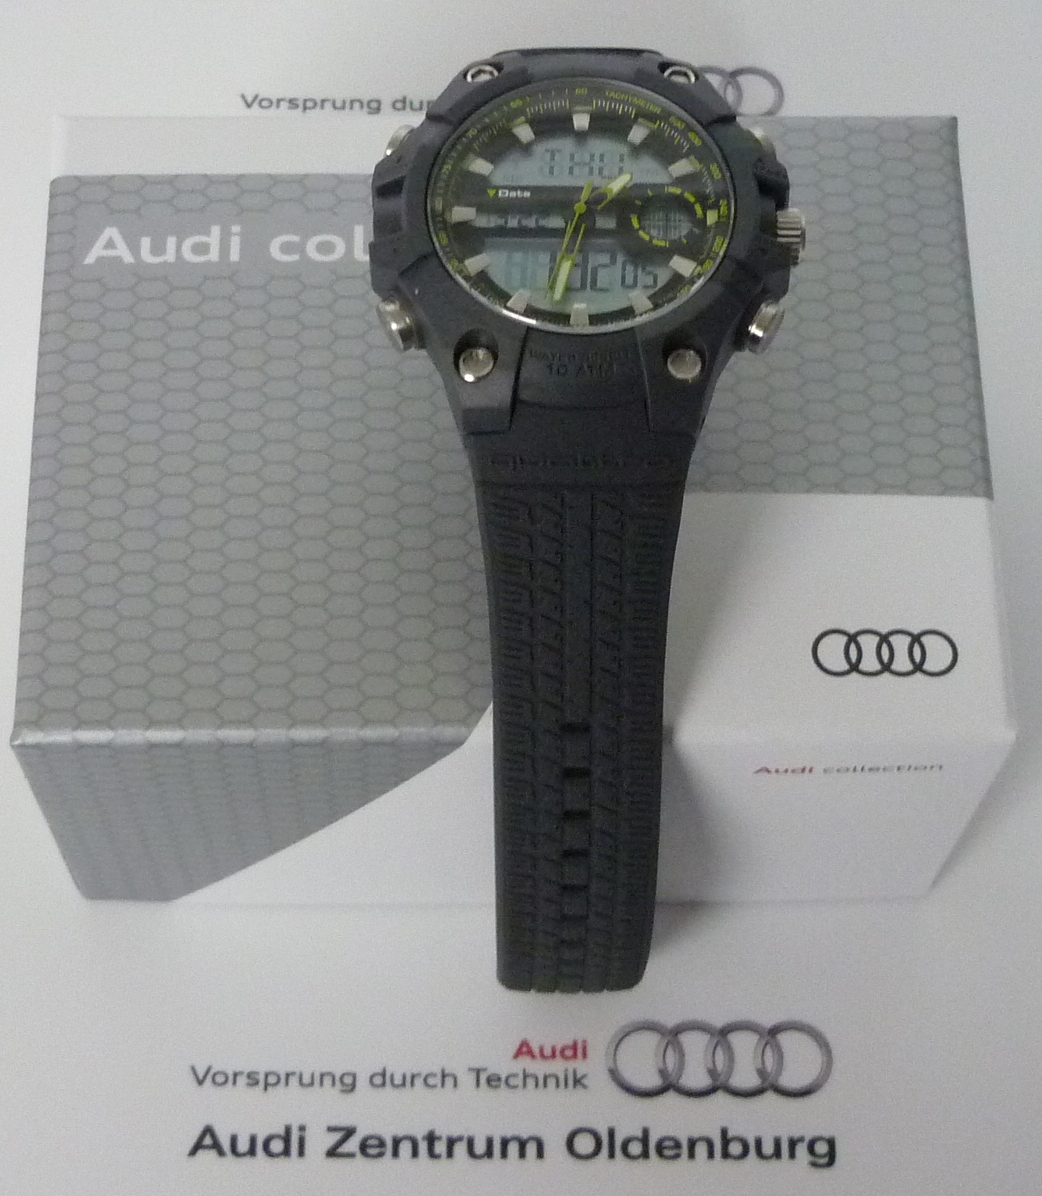 Audi-Uhren und andere Auto-Uhren